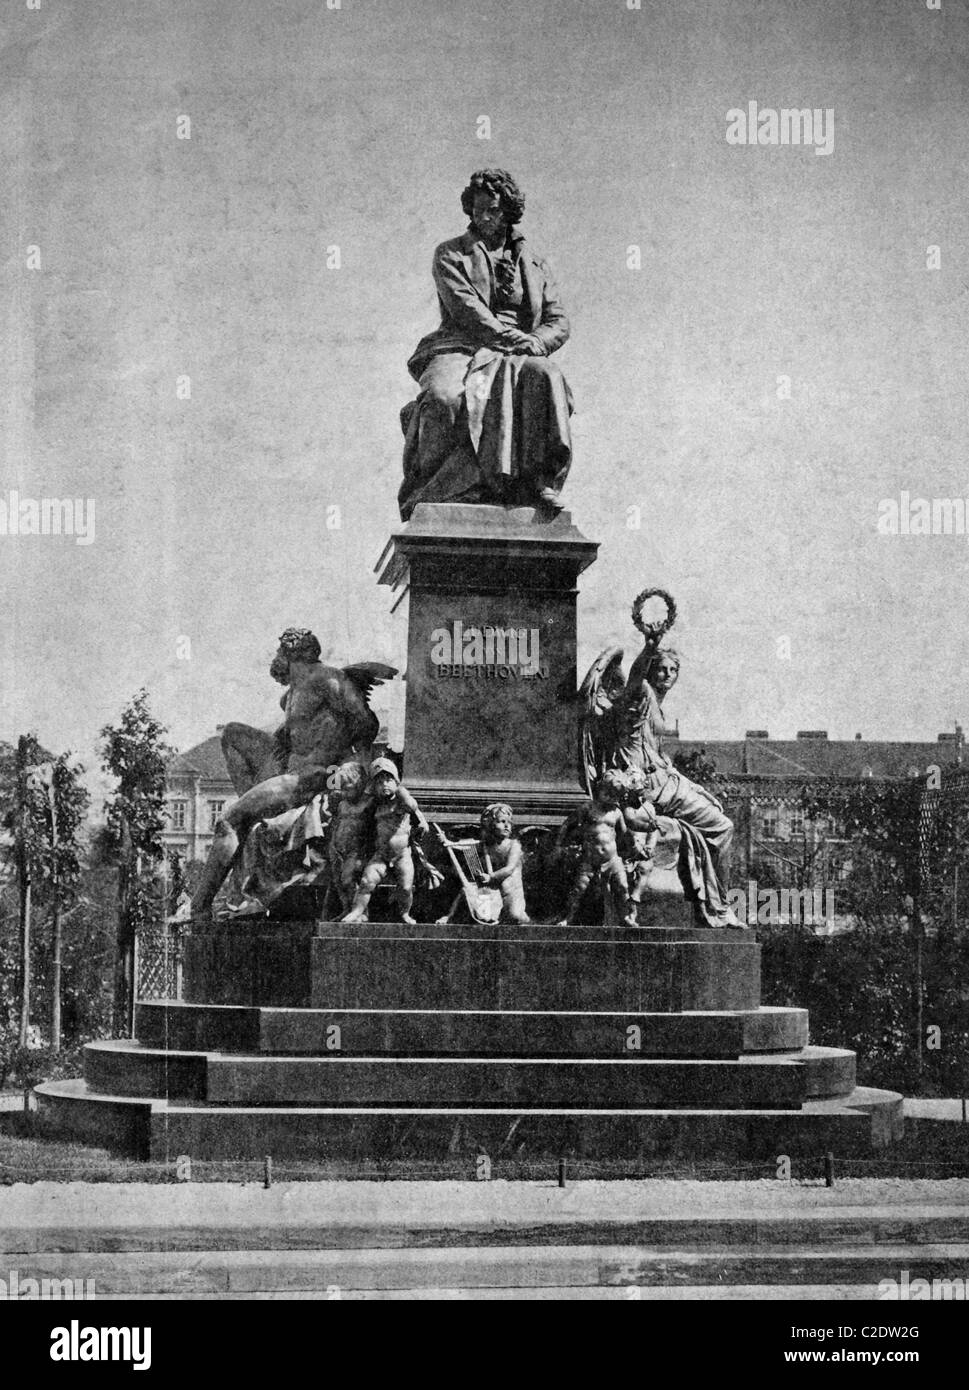 Una delle prime stampe di Autotype, Beethoven monumento storico, fotografia, 1884, Vienna, Austria, Europa Foto Stock